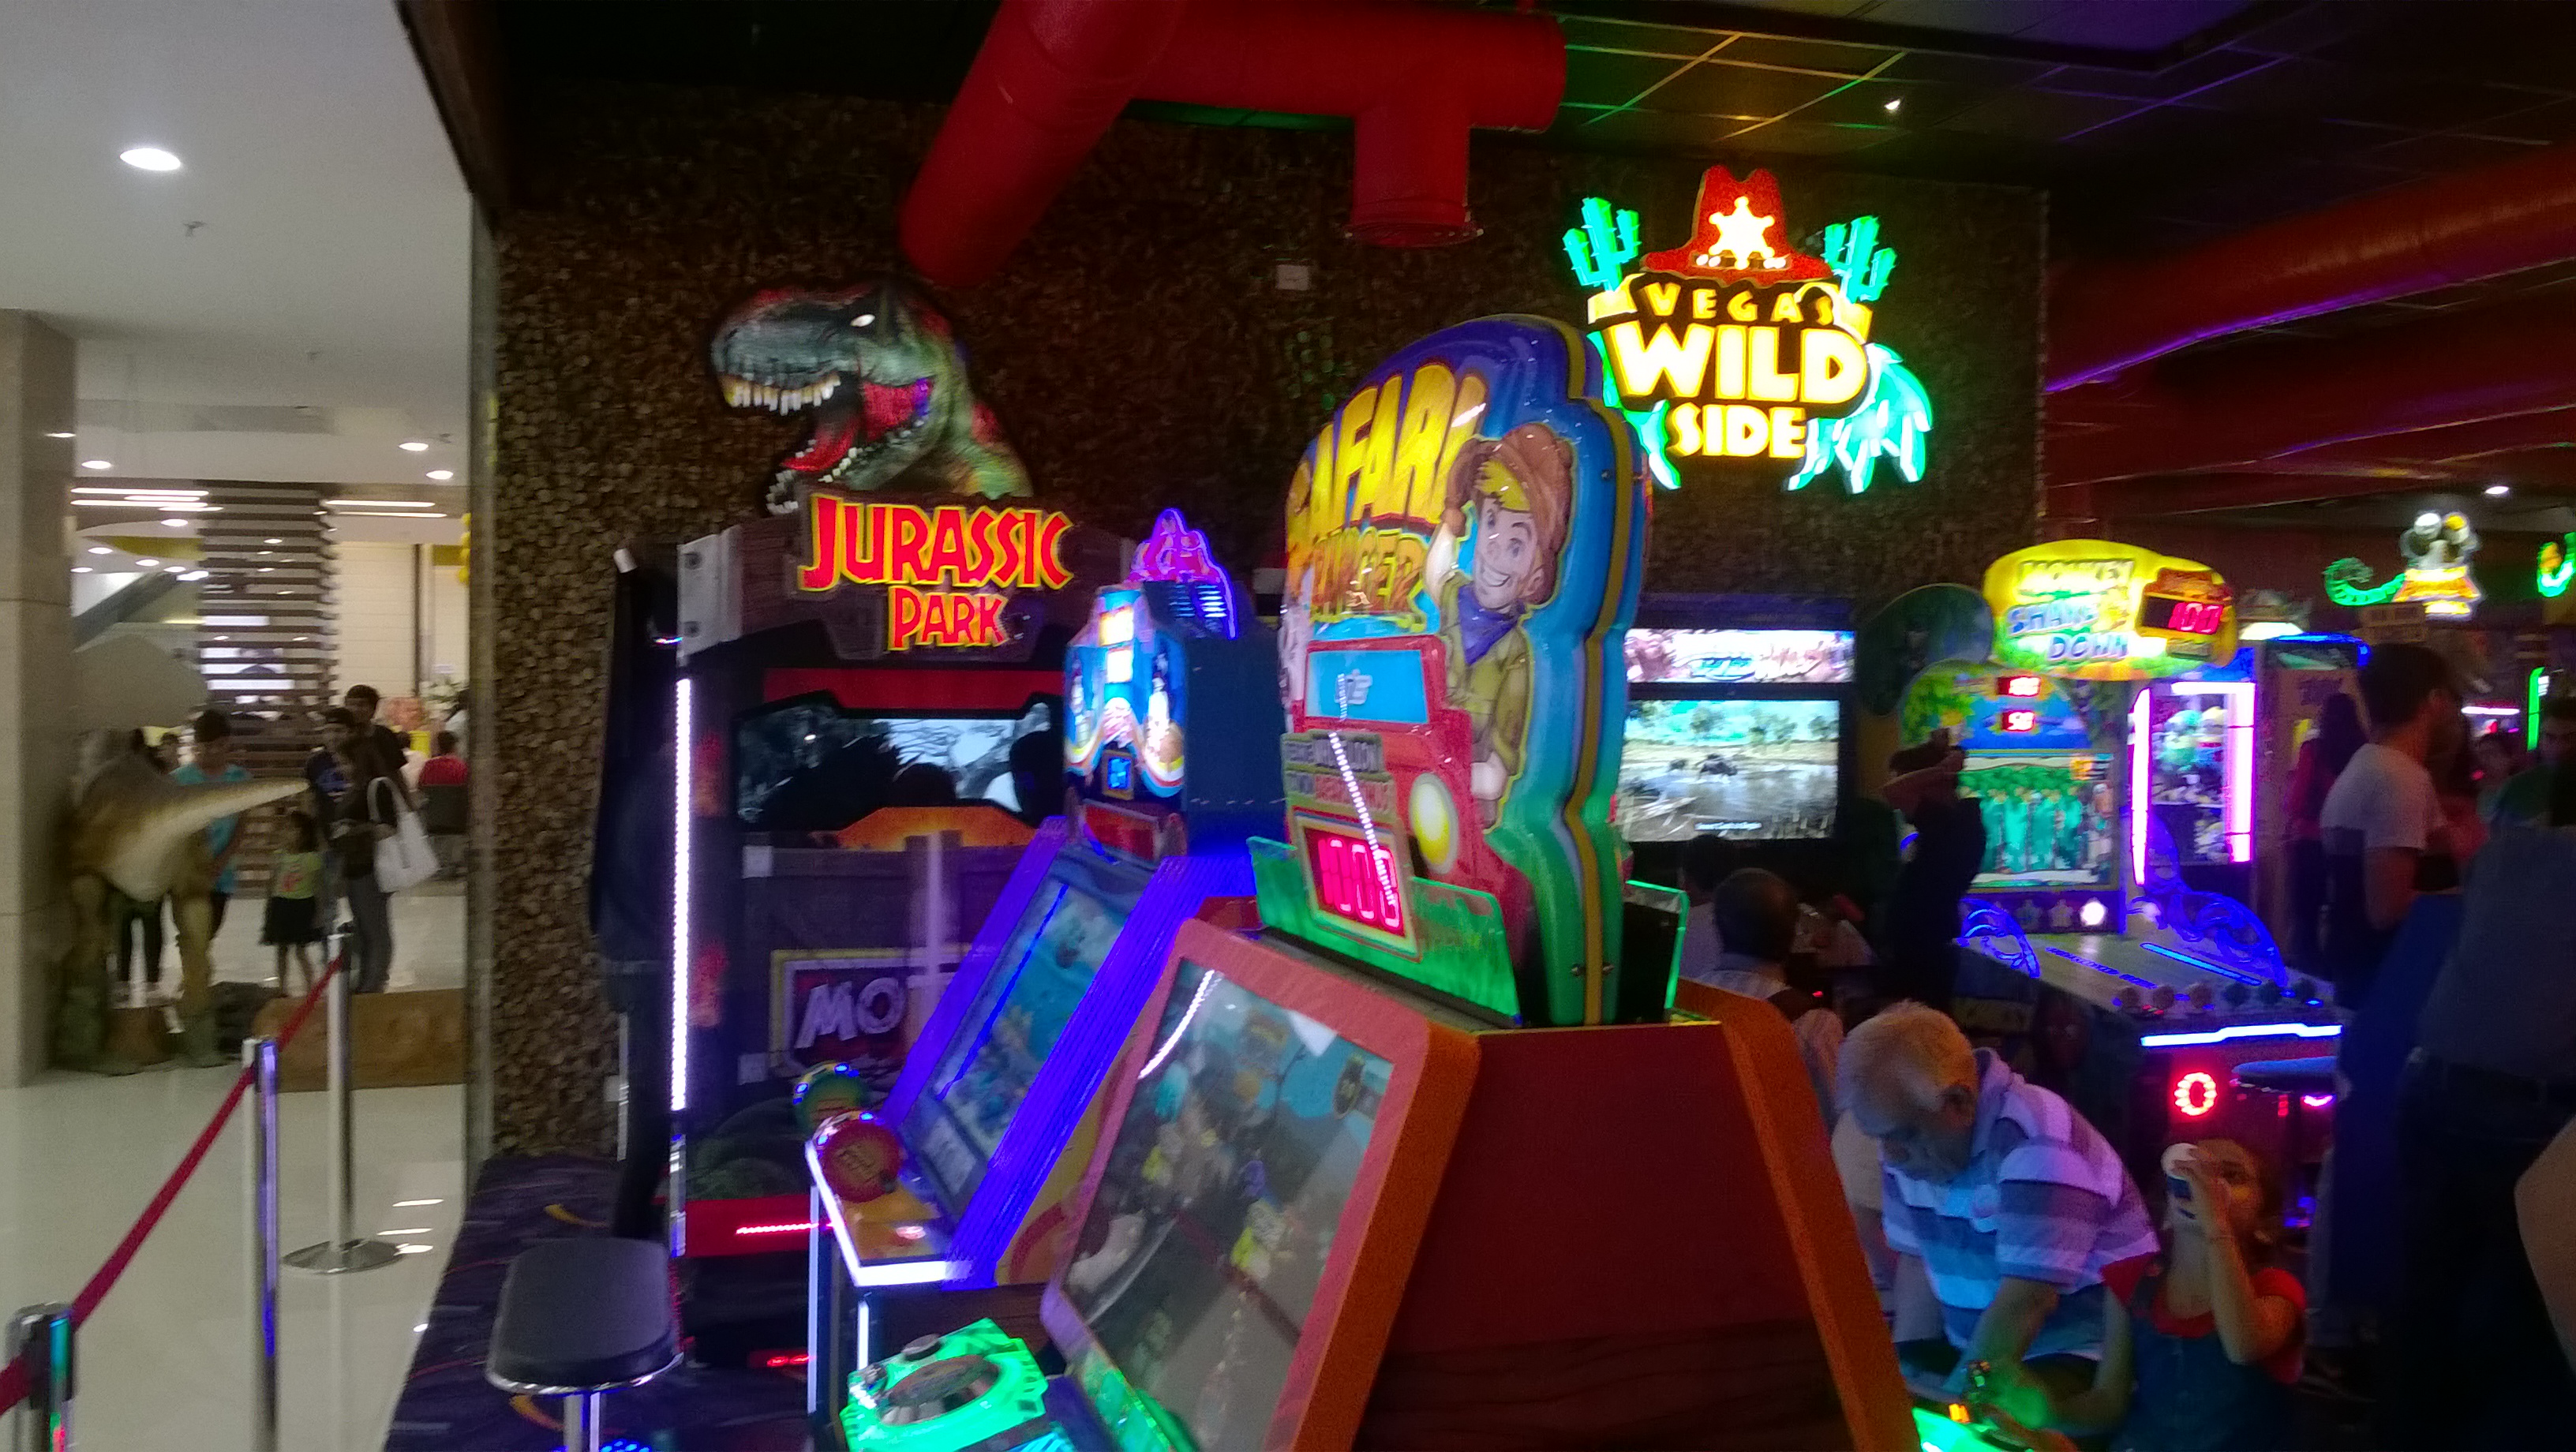 Vegas Wild Side at The Gaming Vegas of Noida